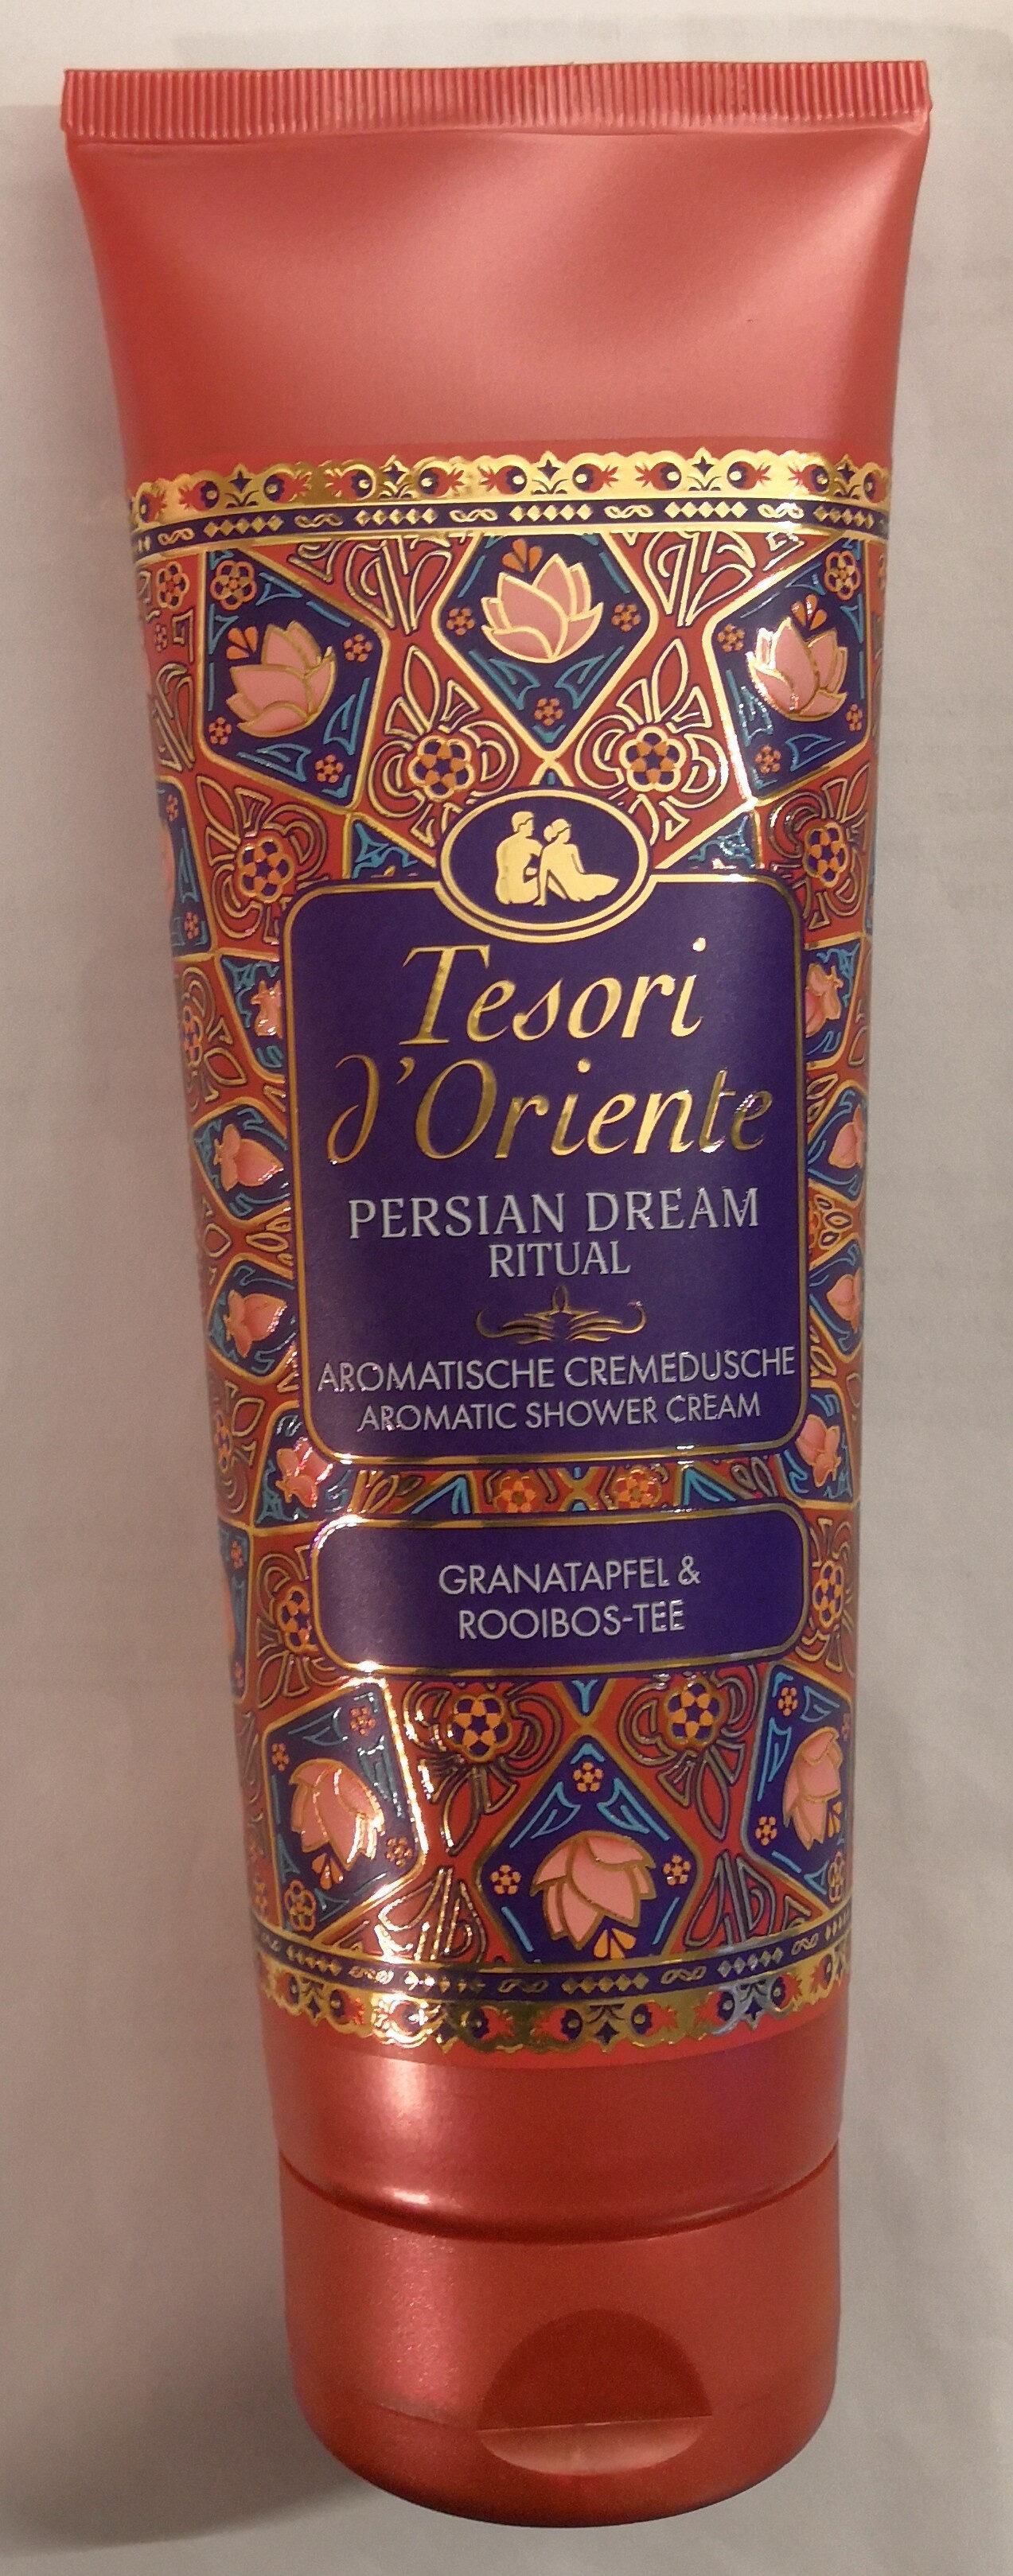 Persian Dream Ritual Granatapfel & Rooibos-Tee - Produit - de